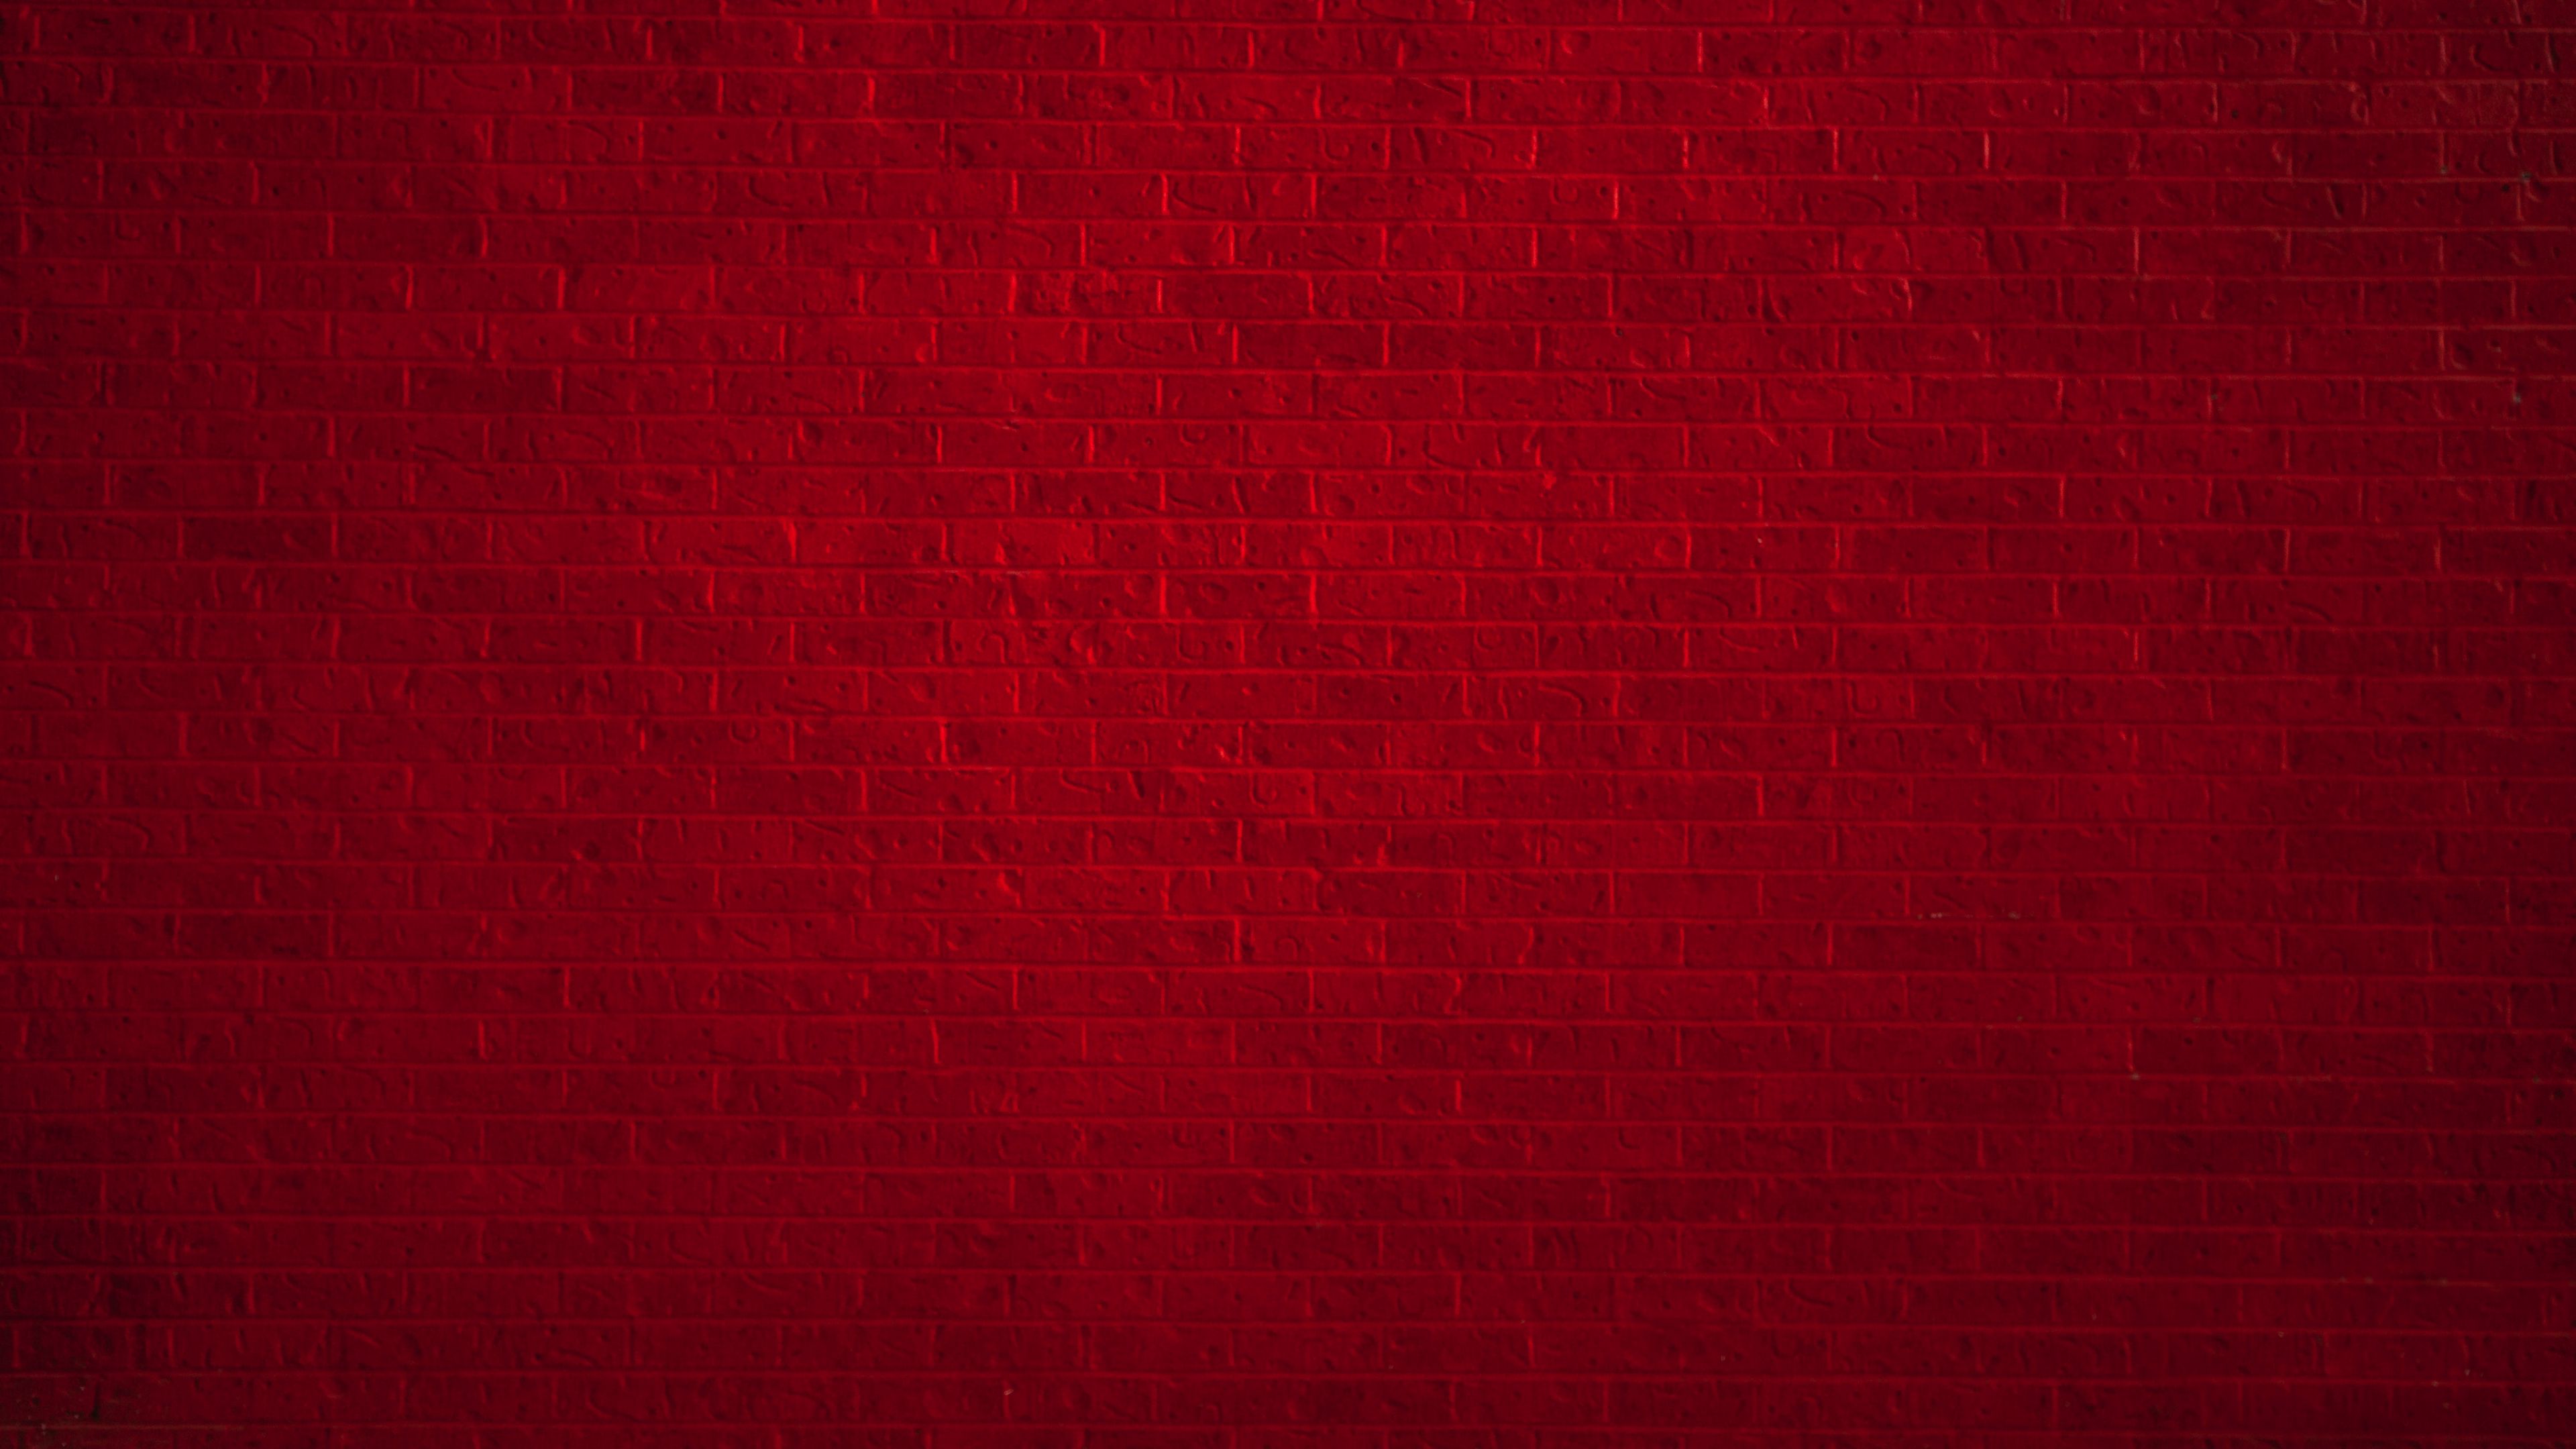 Tường gạch đỏ mang lại cho không gian một phong cách ấn tượng và độc đáo. Hình ảnh về tường gạch đỏ sẽ giúp bạn tưởng tượng và sáng tạo về cách trang trí cho ngôi nhà của mình.